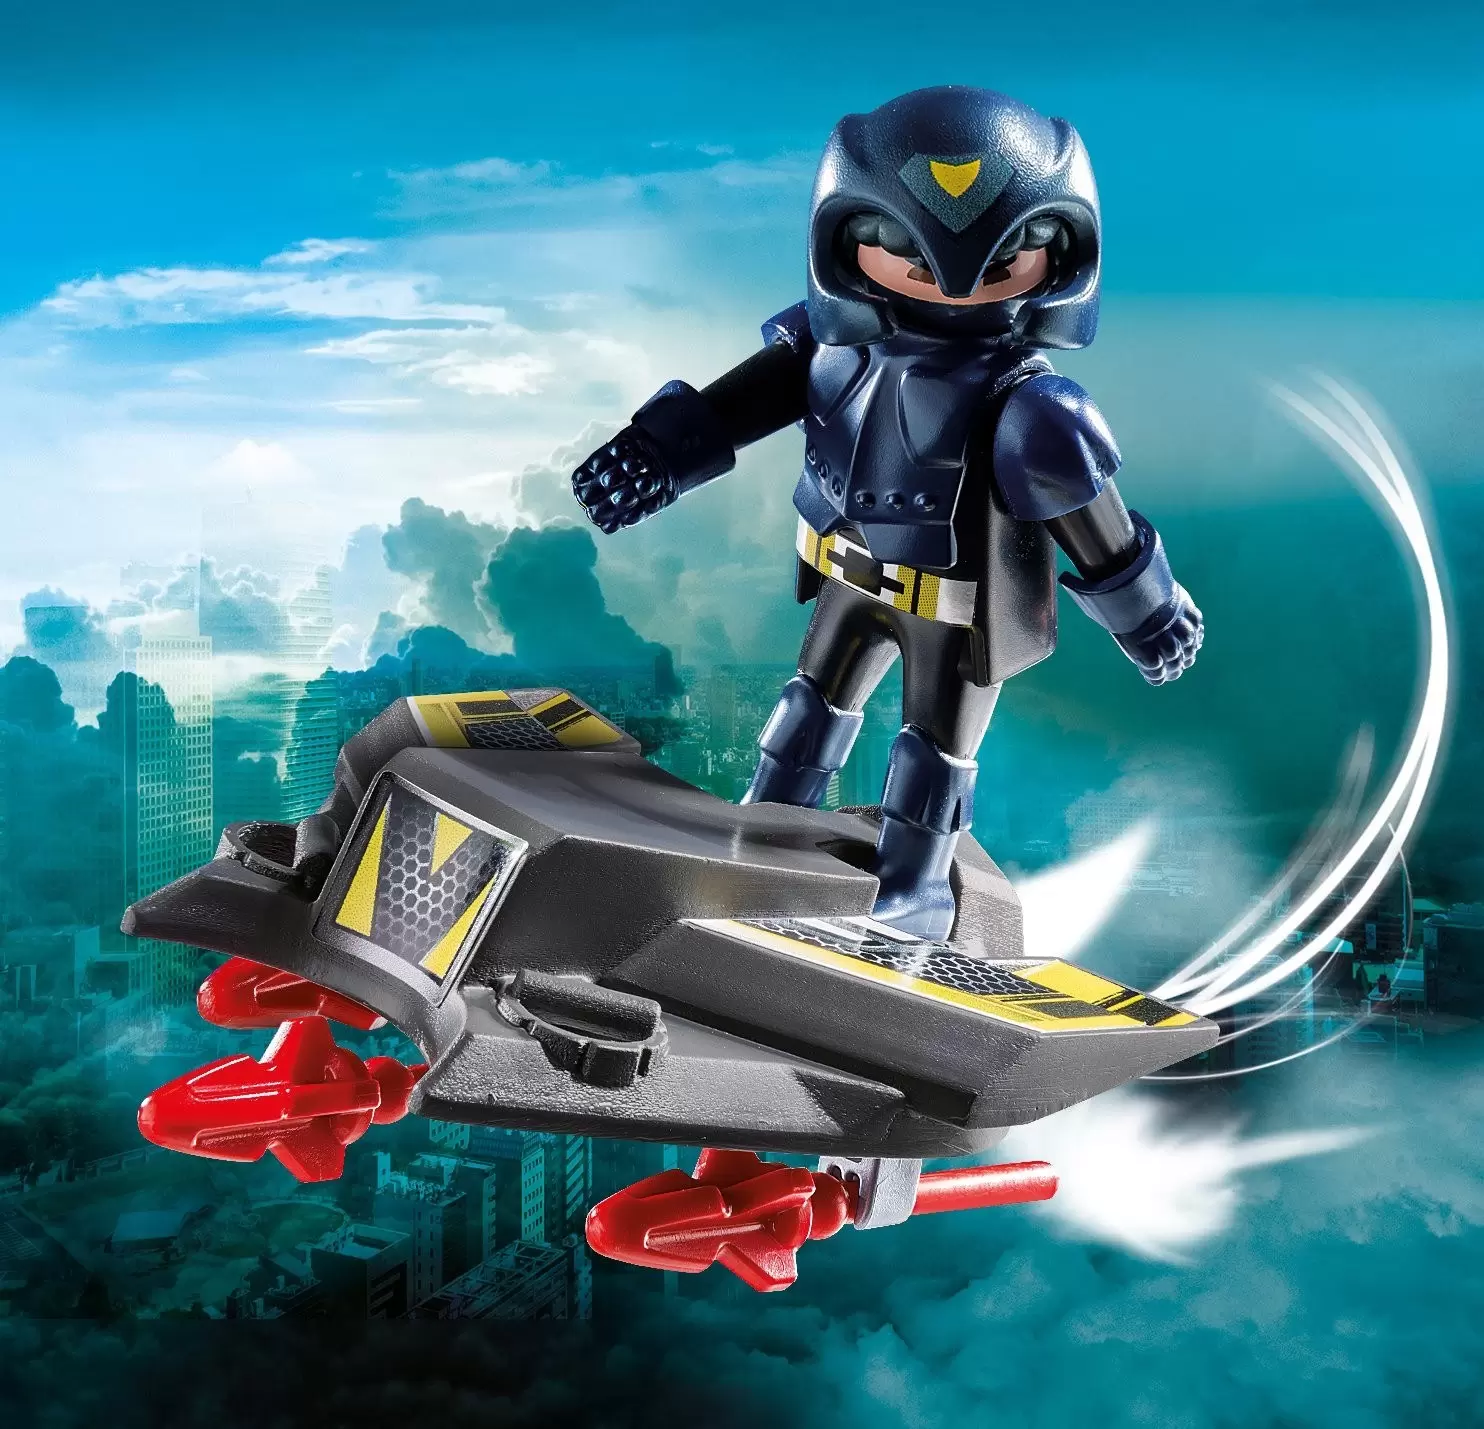 Playmobil SpecialPlus - Sky Knight with Jet